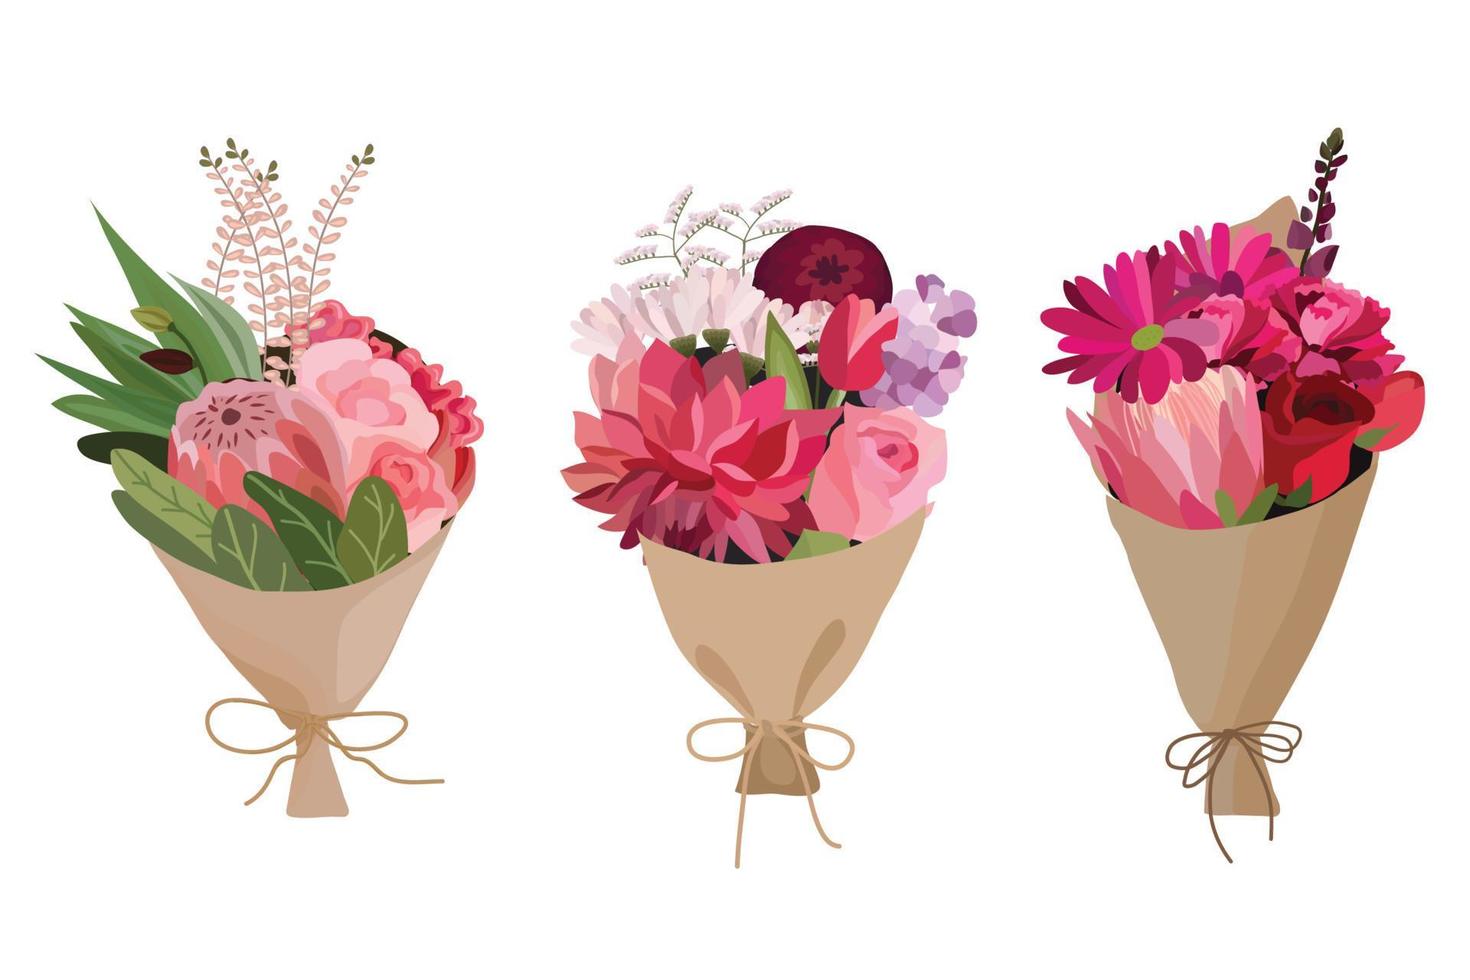 buquê de flores, design de buquê floral. ilustração vetorial. vetor